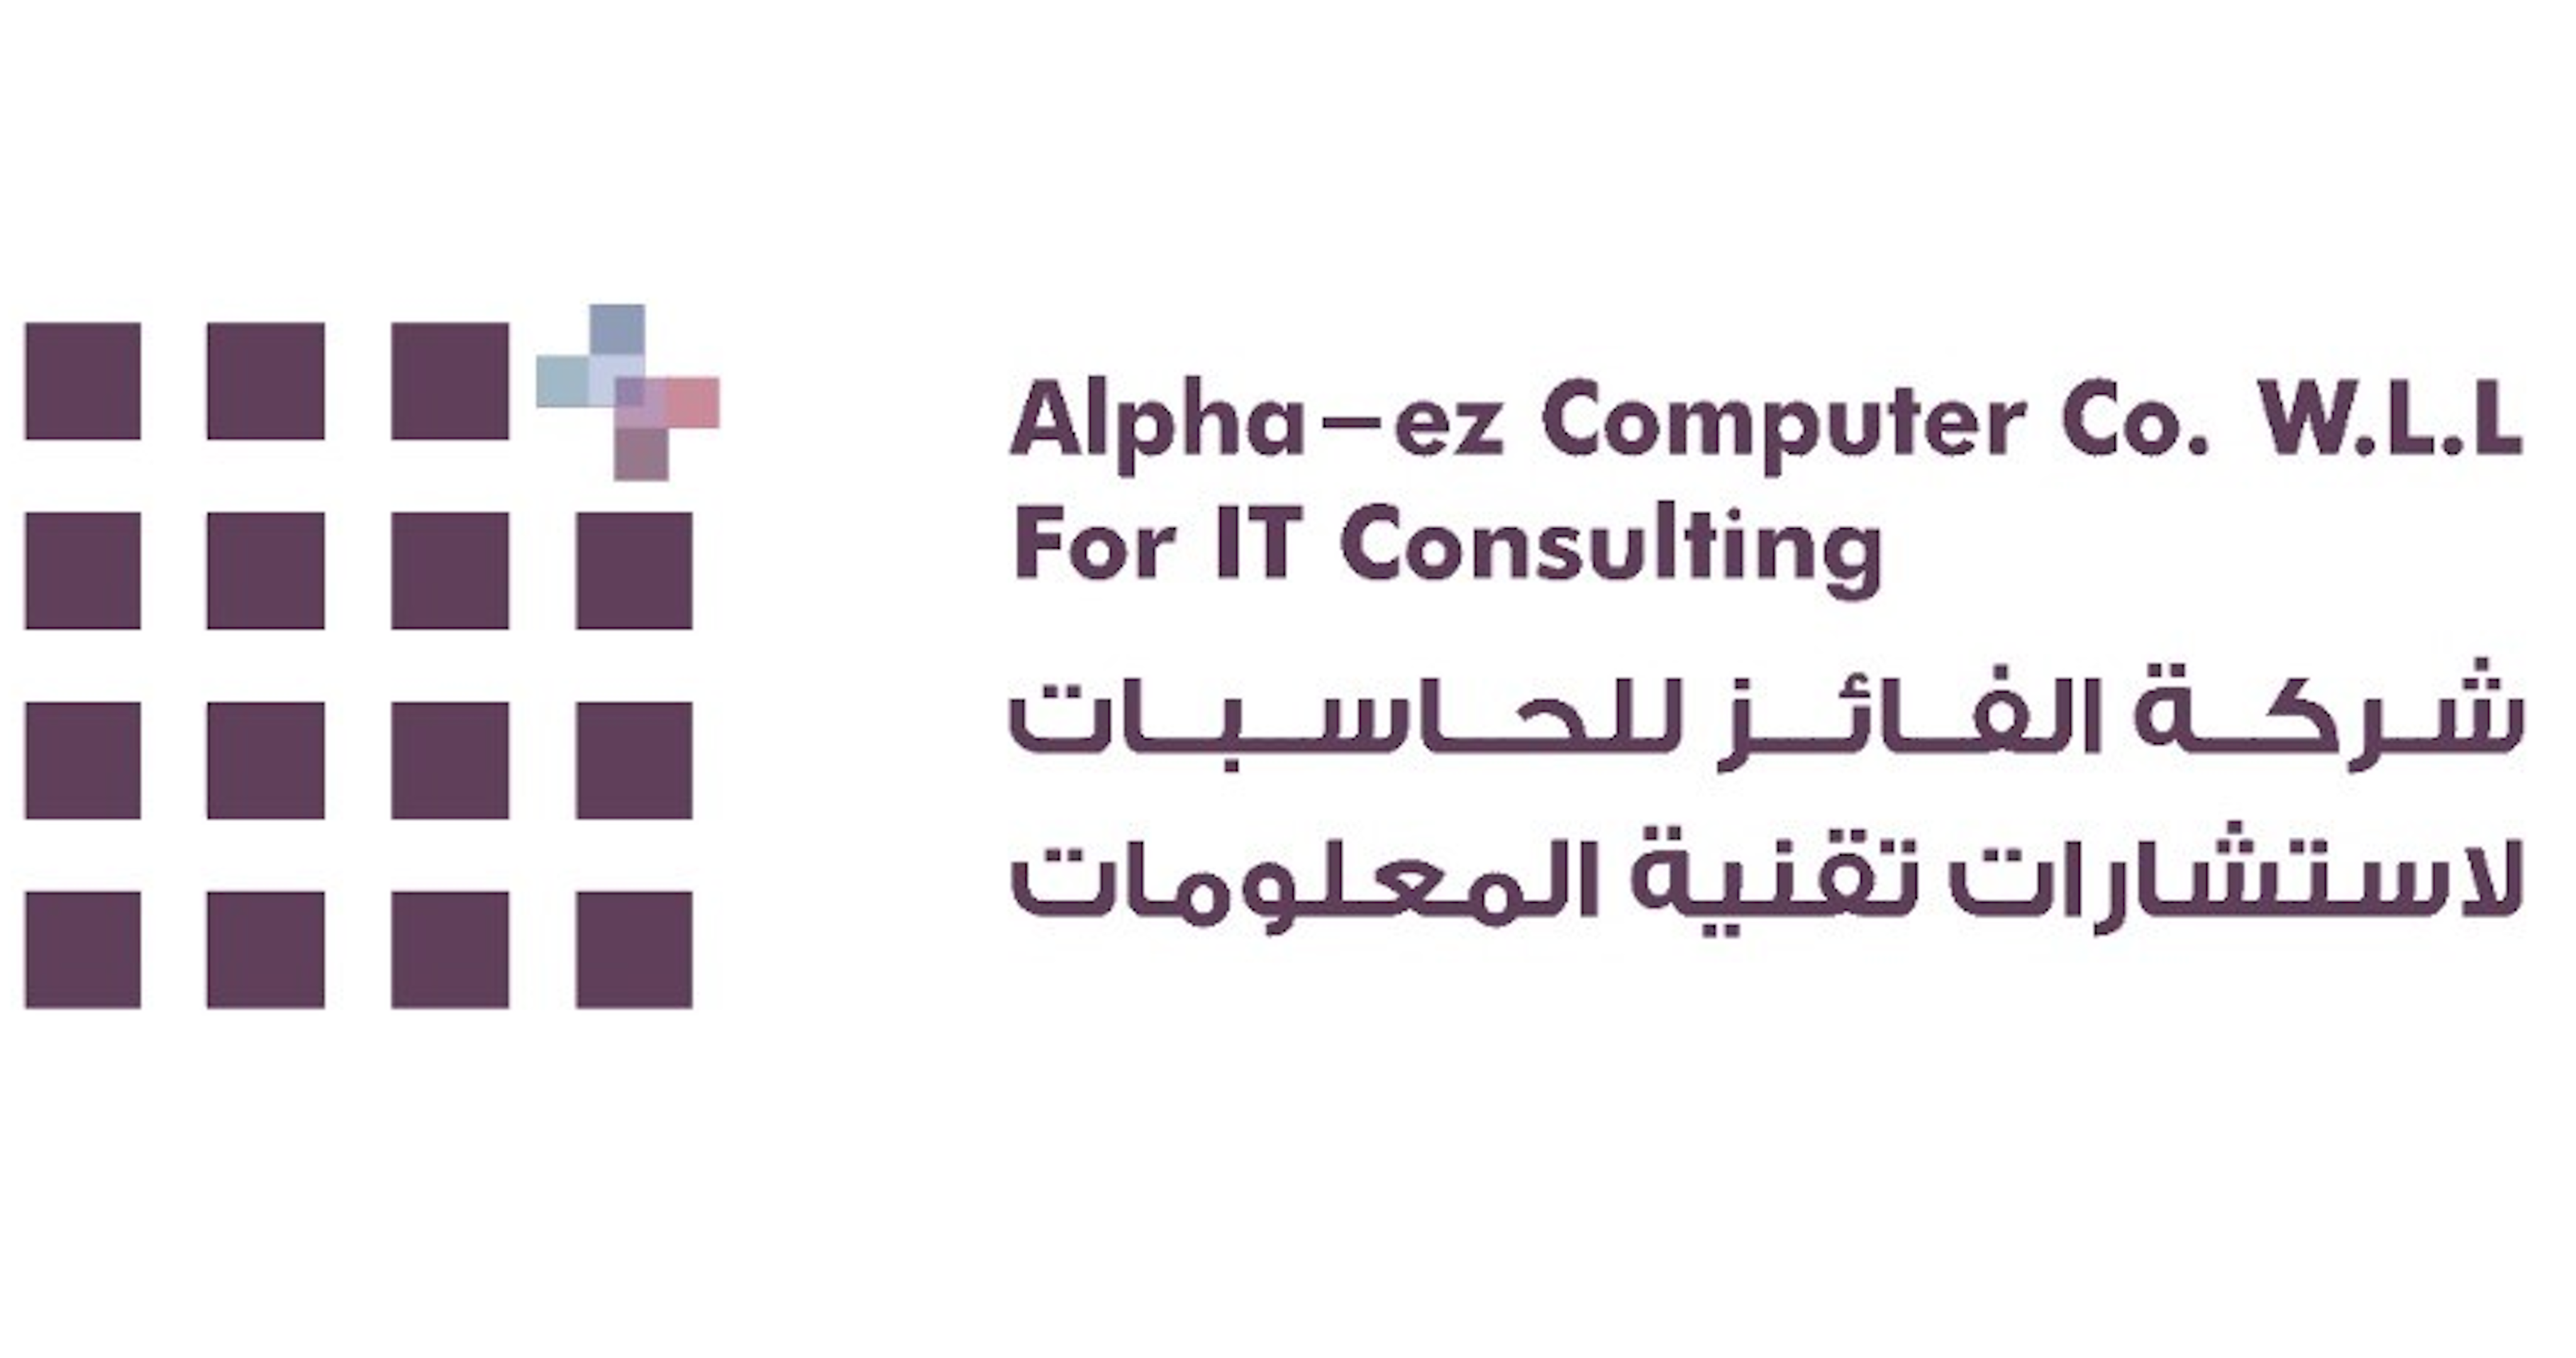 Alpha-ez Computer Company